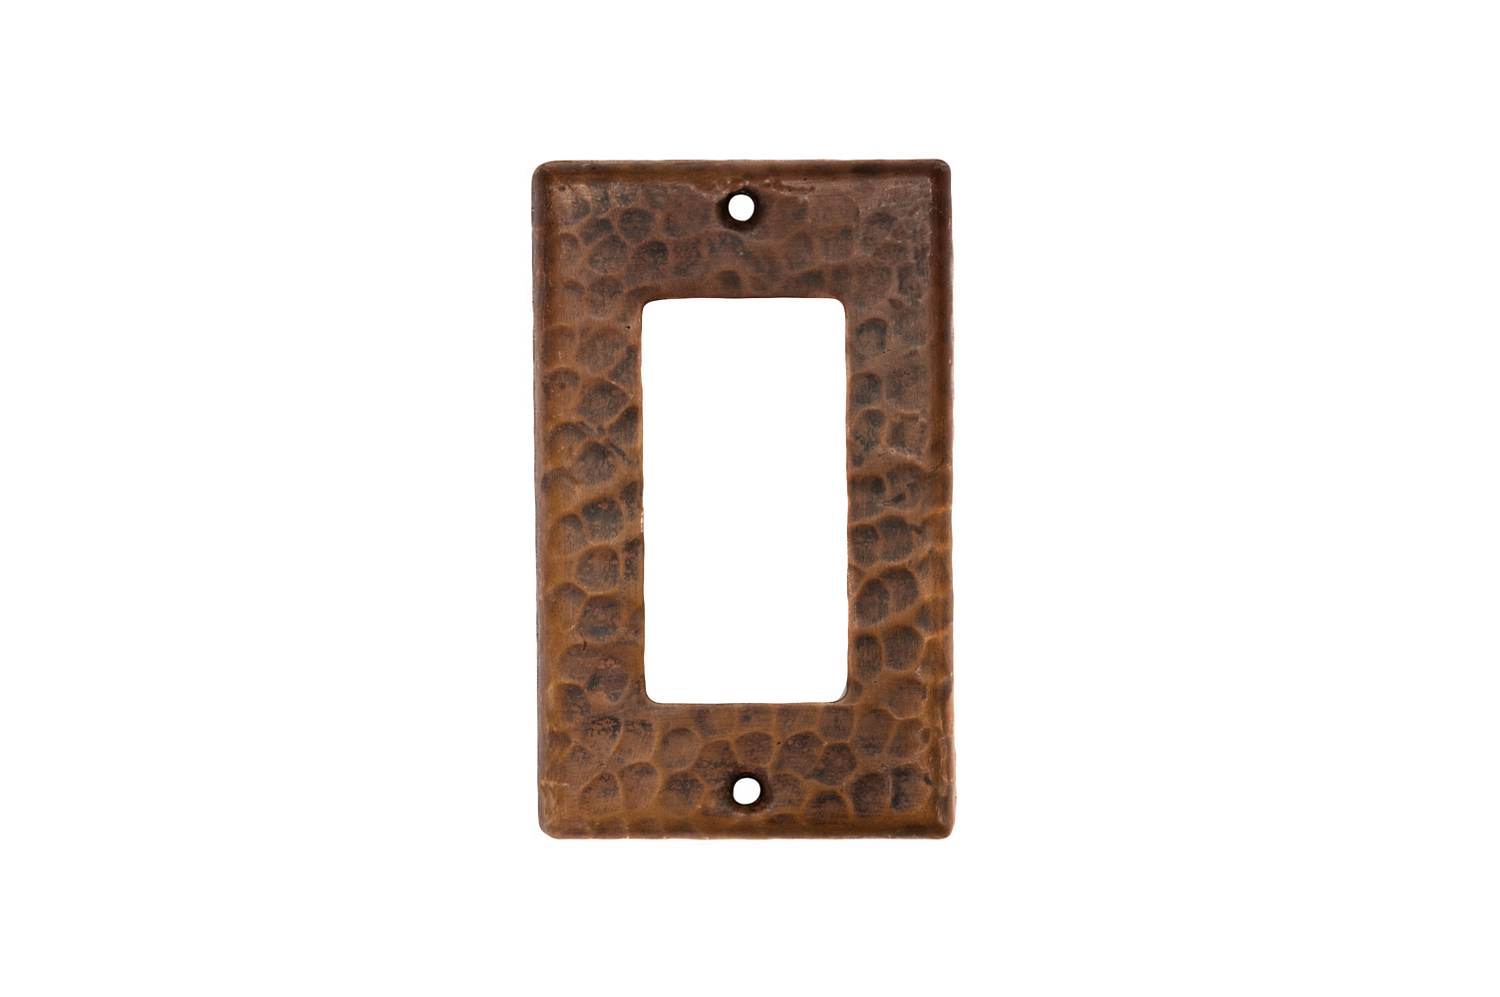 SR1_PKG4 2.75 Inch Premier Copper Single Ground Fault/Rocker GFI Switchplate Cover - Quantity 4